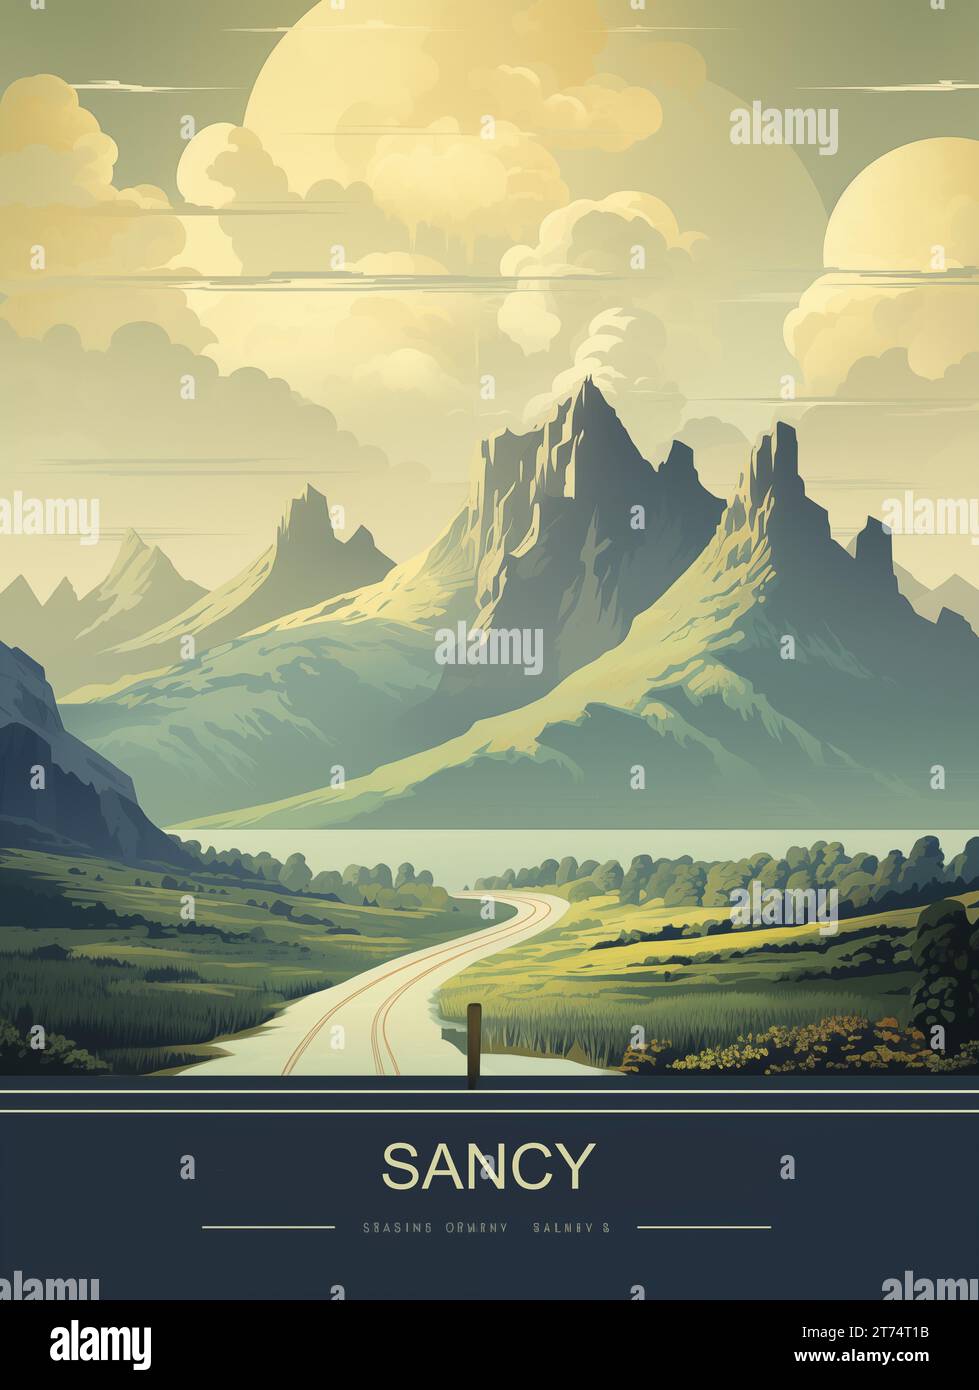 Un poster di alta qualità con un paesaggio mozzafiato di una maestosa catena montuosa con un lago tranquillo e una strada tortuosa che conduce ad esso Foto Stock